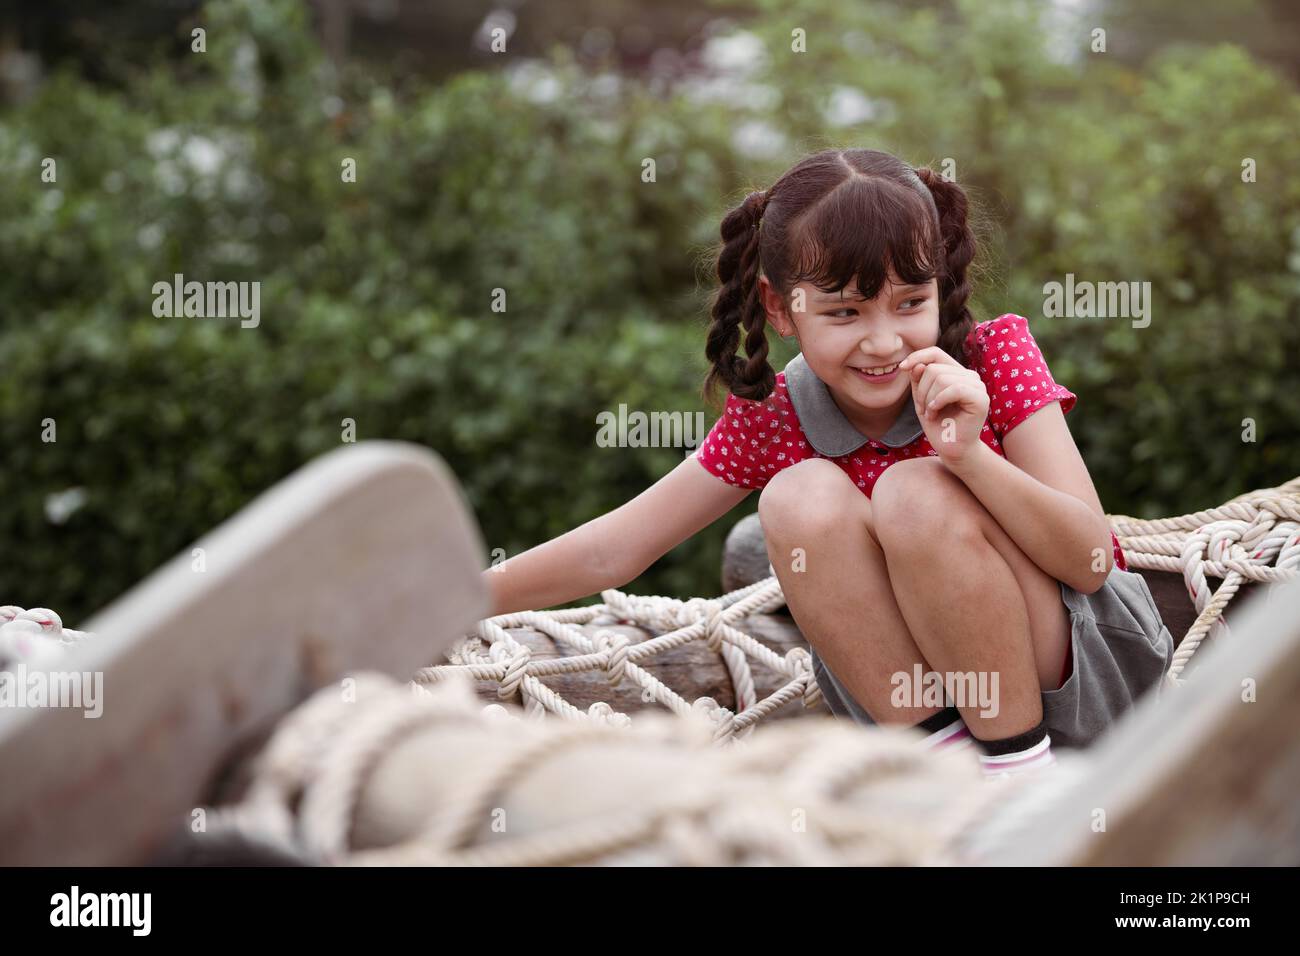 Bonne fille jouant sur une corde raide dans une aire de jeux. Banque D'Images